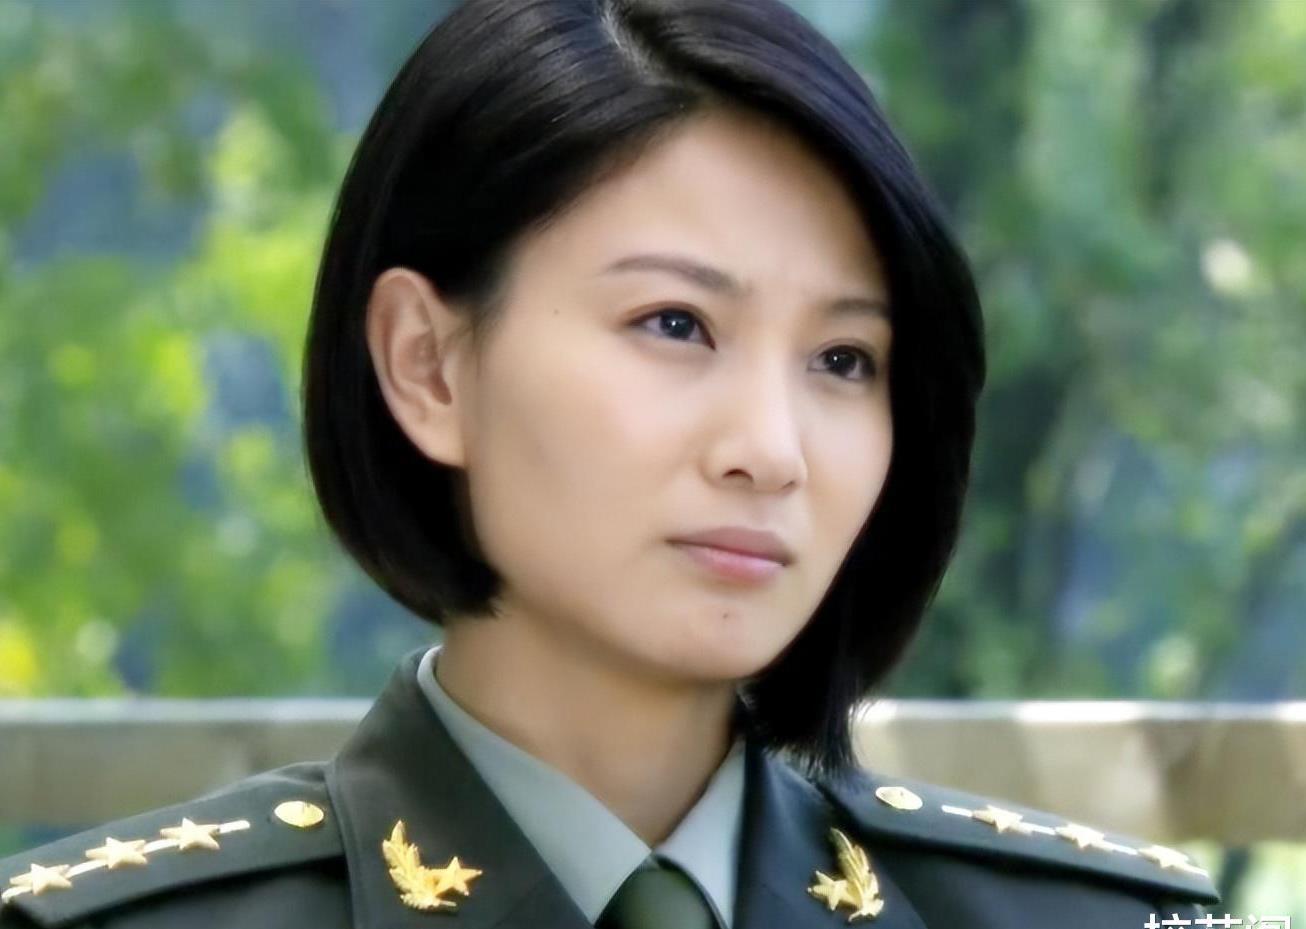 侯梦莎:军旅剧中的璀璨明星,回归家庭的新篇章 在军旅影视领域,吴京